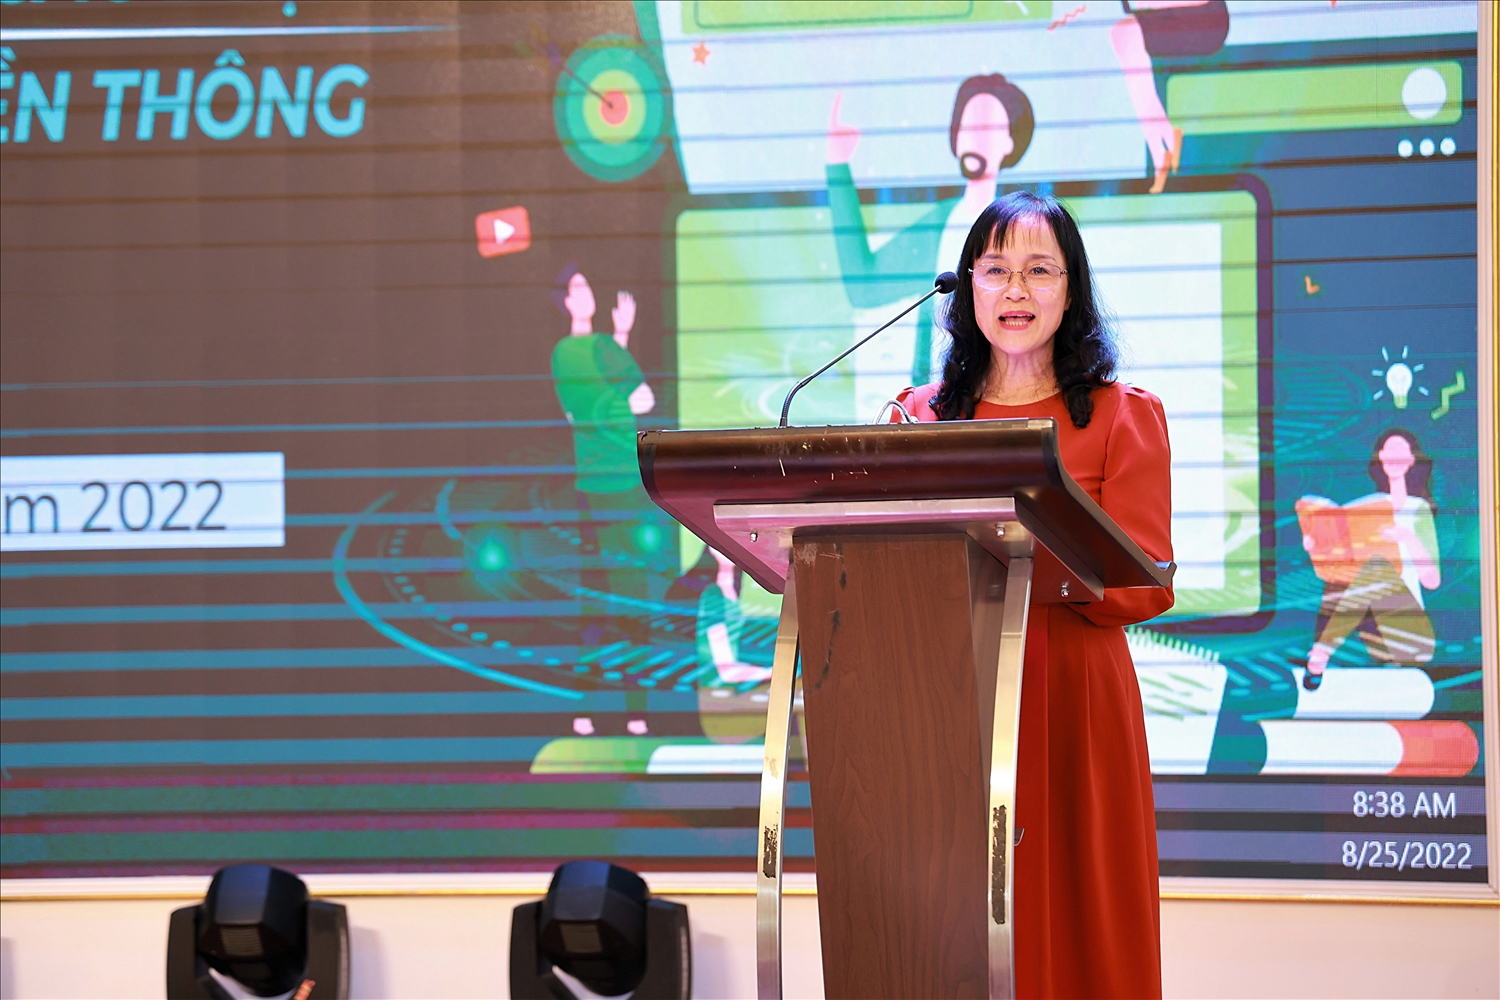 Bà Nguyễn Thị Minh Tâm – Giám đốc chi nhánh Vinamilk Hà Nội chia sẻ tại buổi khai giảng khóa tập huấn